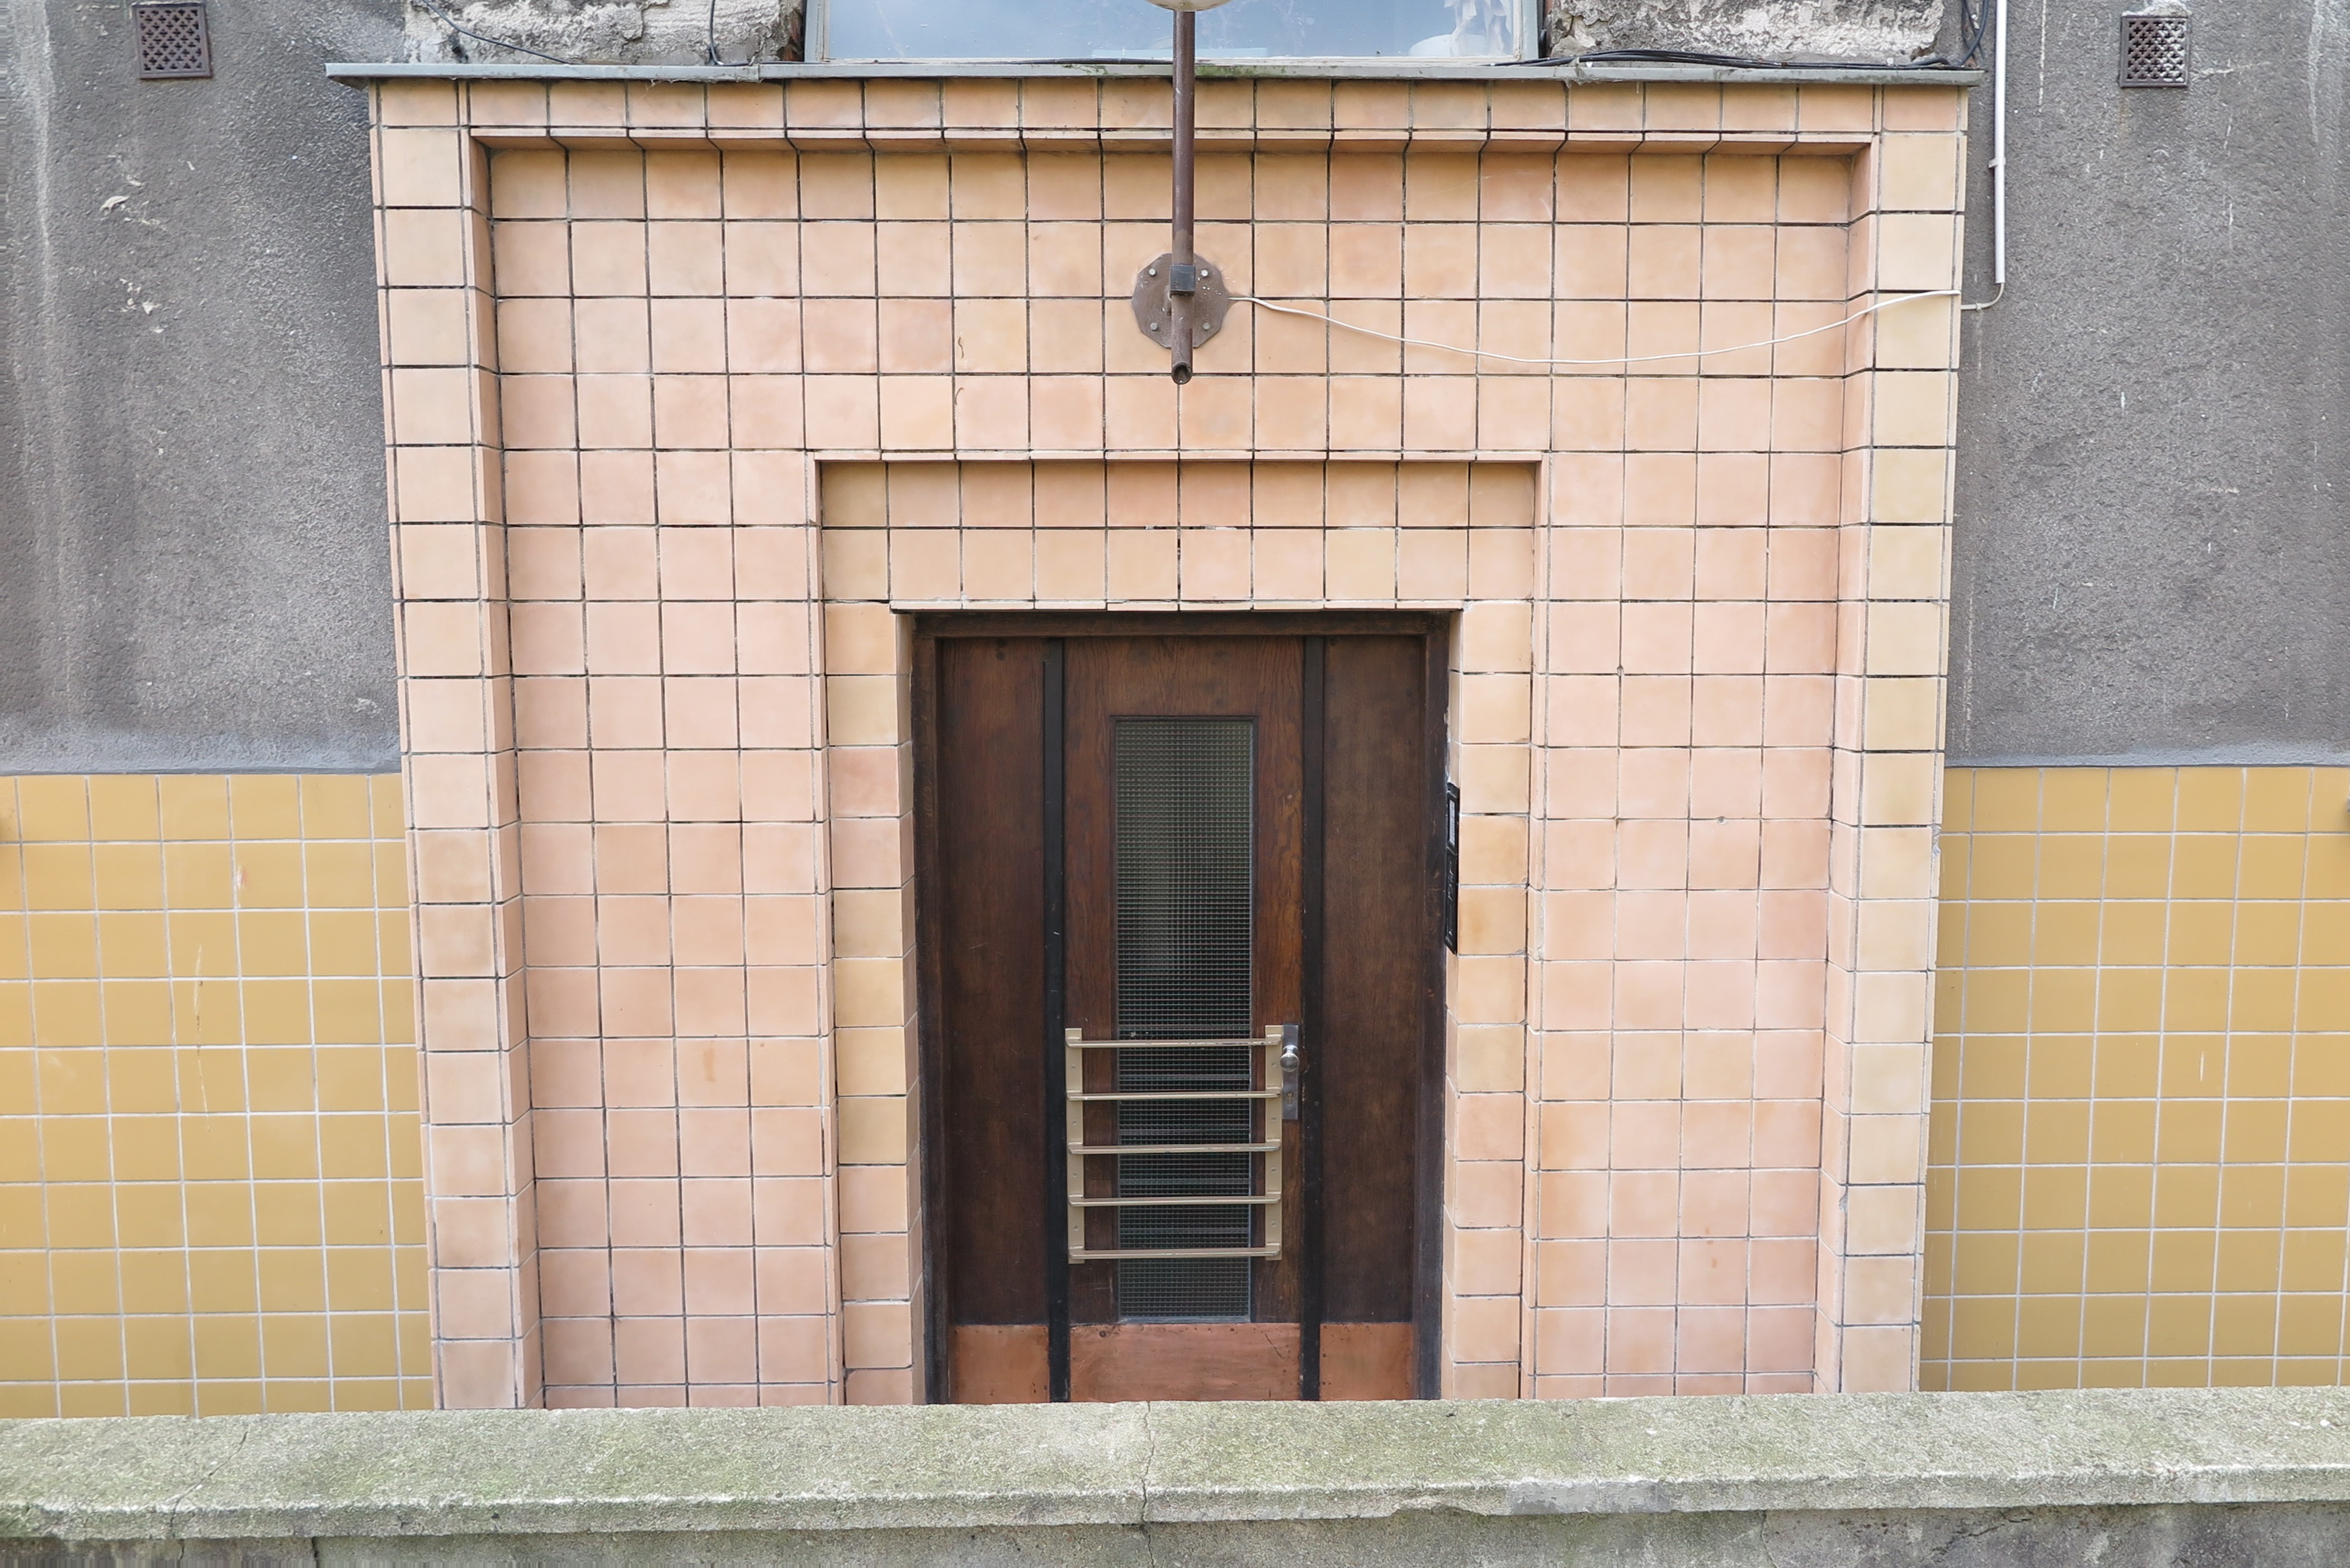 Portal od podwórza budynku przy ul. 3 Maja 27-31 z lat 30. XX w., obłożony płytkami ceramicznymi.